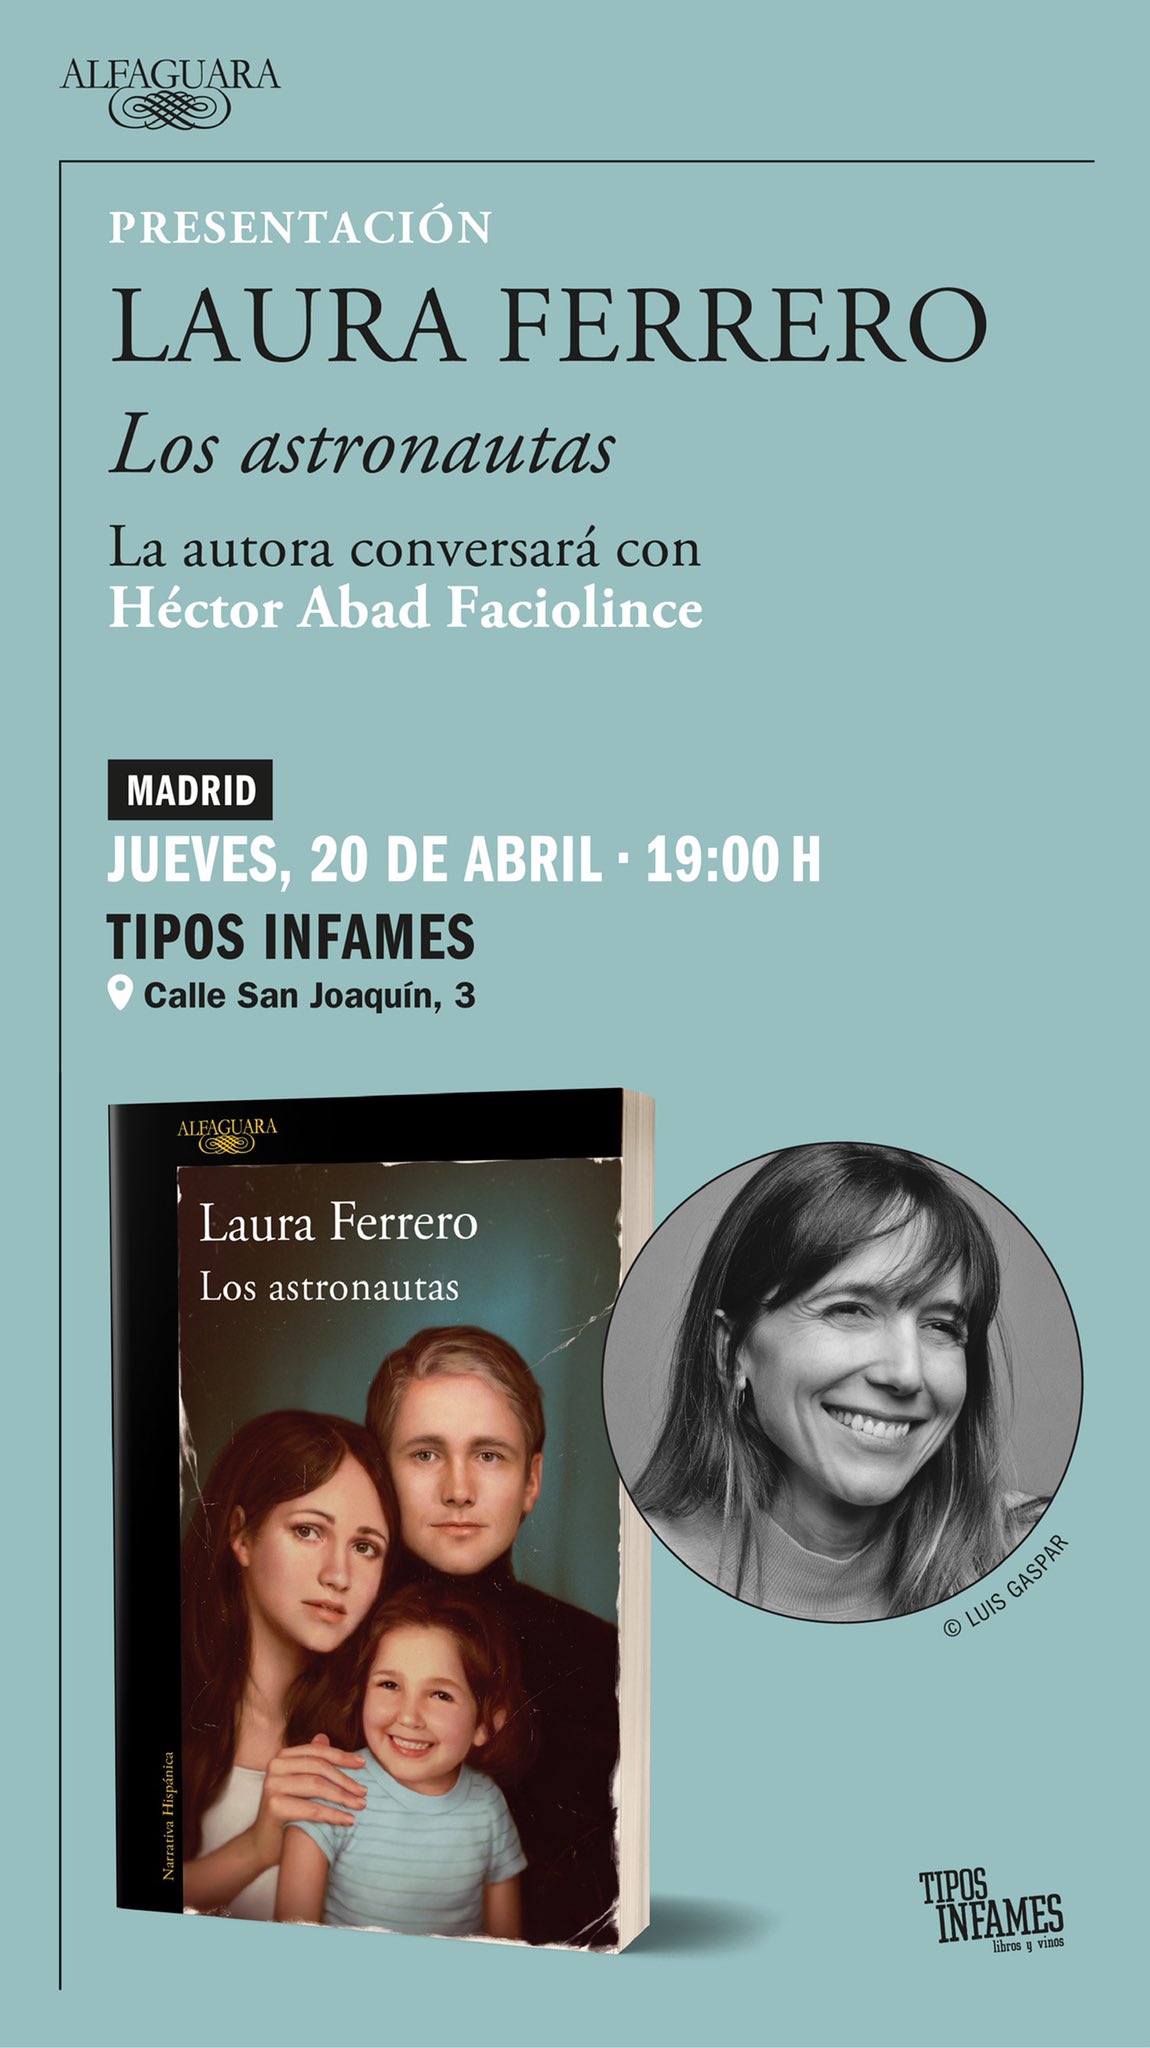 Laura Ferrero on X: Esto es hoy. Me hace muchísima ilusión conversar con  @hectorabadf en @tiposinfames @AlfaguaraES ✨  / X